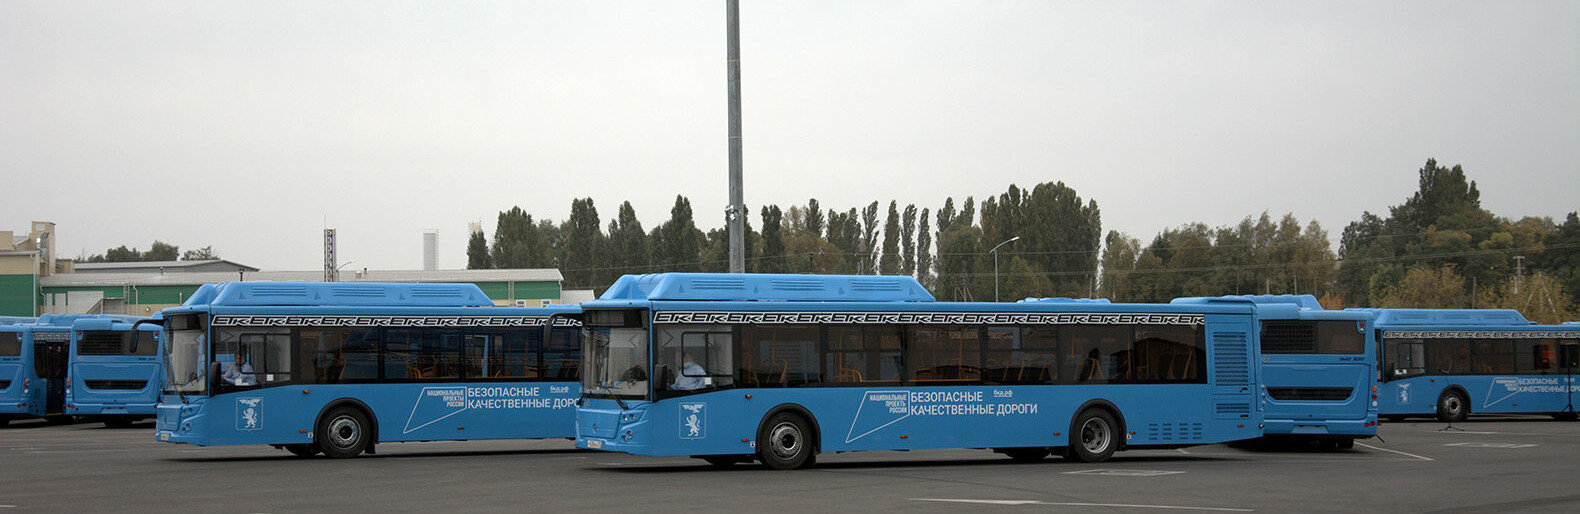 Белгород получил новые автобусы